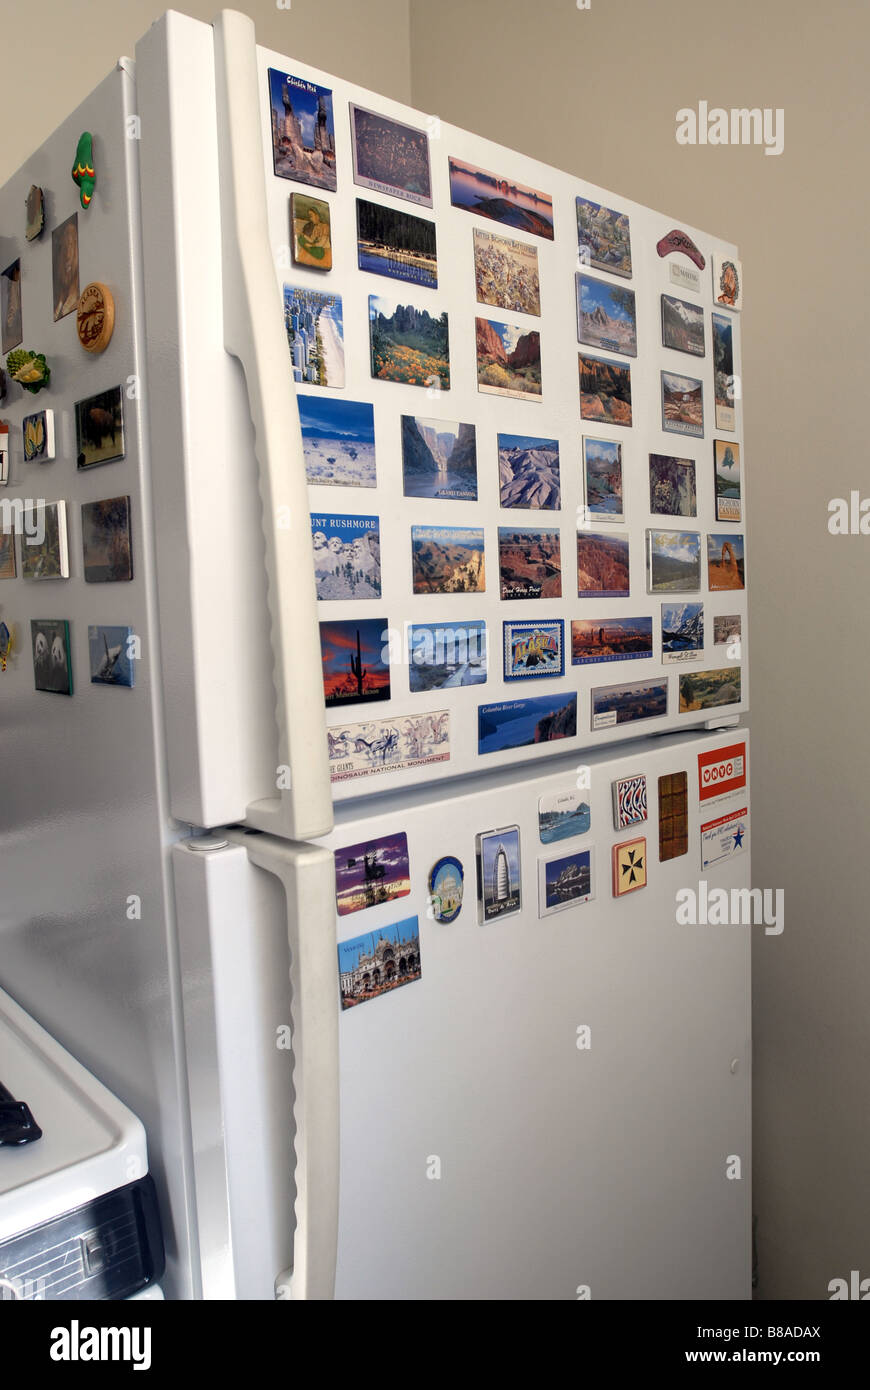 Magneti del frigorifero immagini e fotografie stock ad alta risoluzione -  Alamy